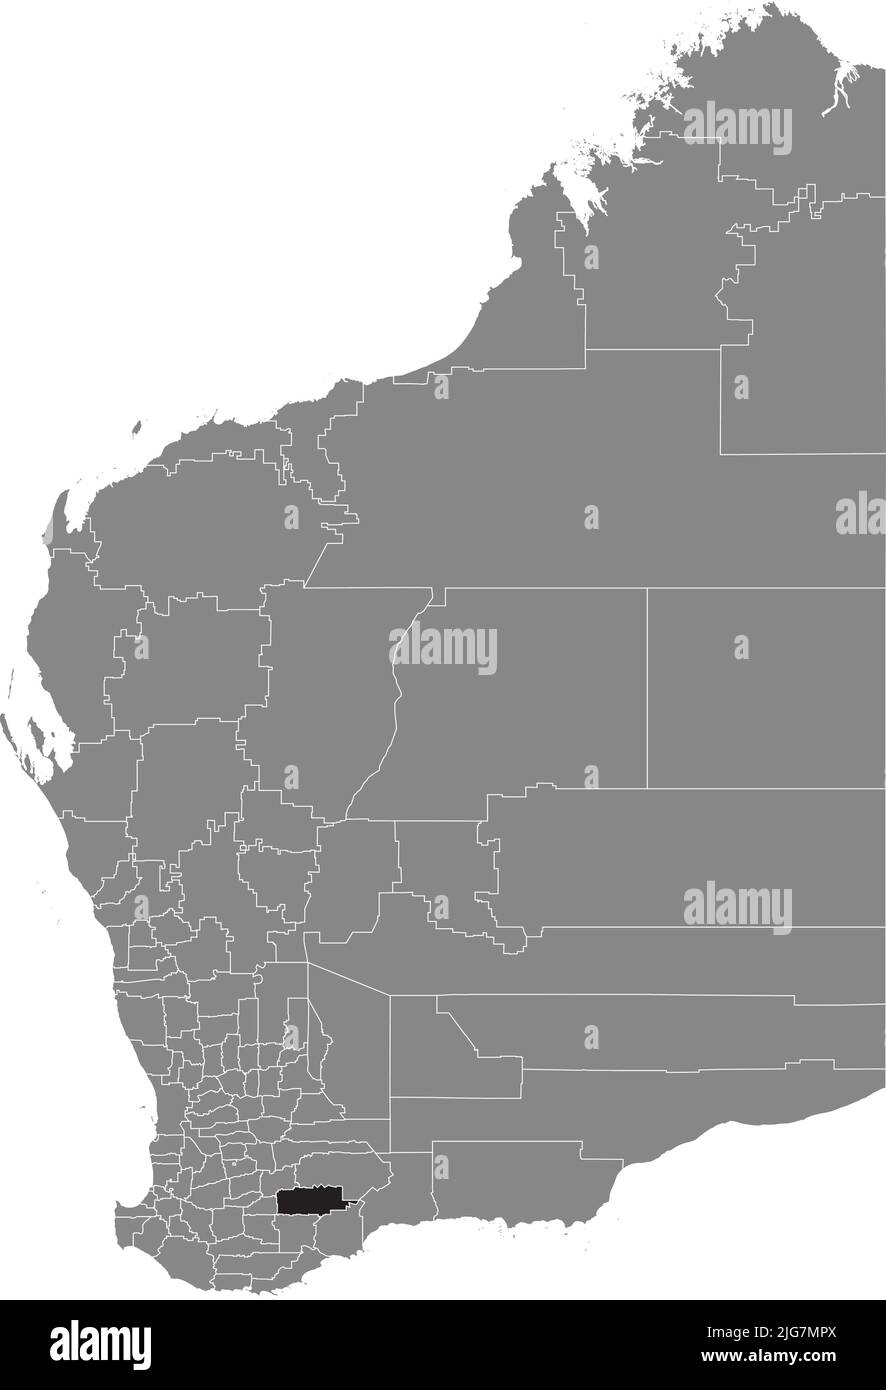 Mappa di localizzazione della SHIRE OF KENT, BEST WESTERN AUSTRALIA Illustrazione Vettoriale